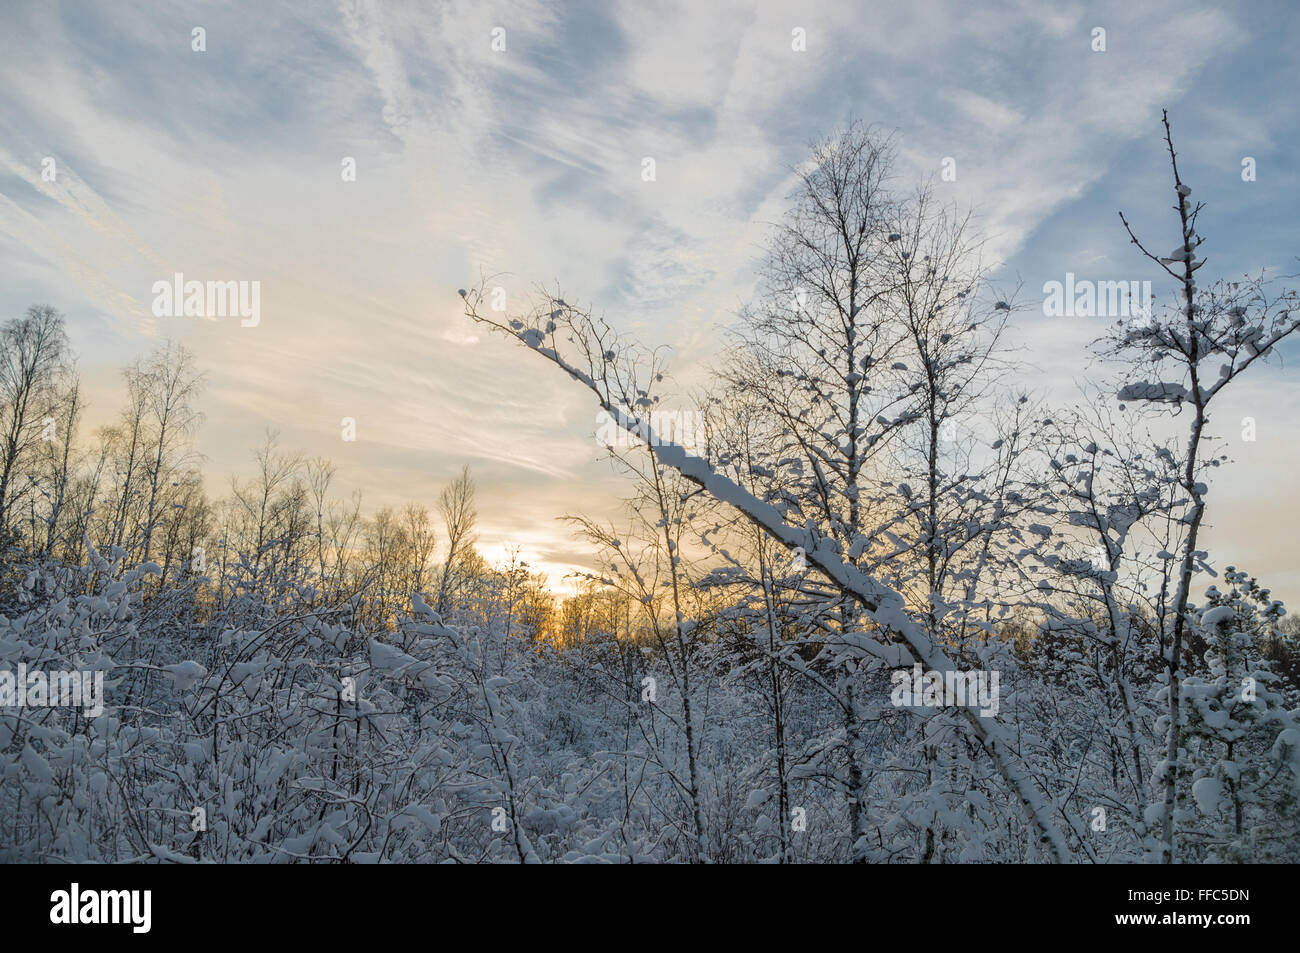 De soleil colorés dans la forêt enneigée, paysage d'hiver Banque D'Images